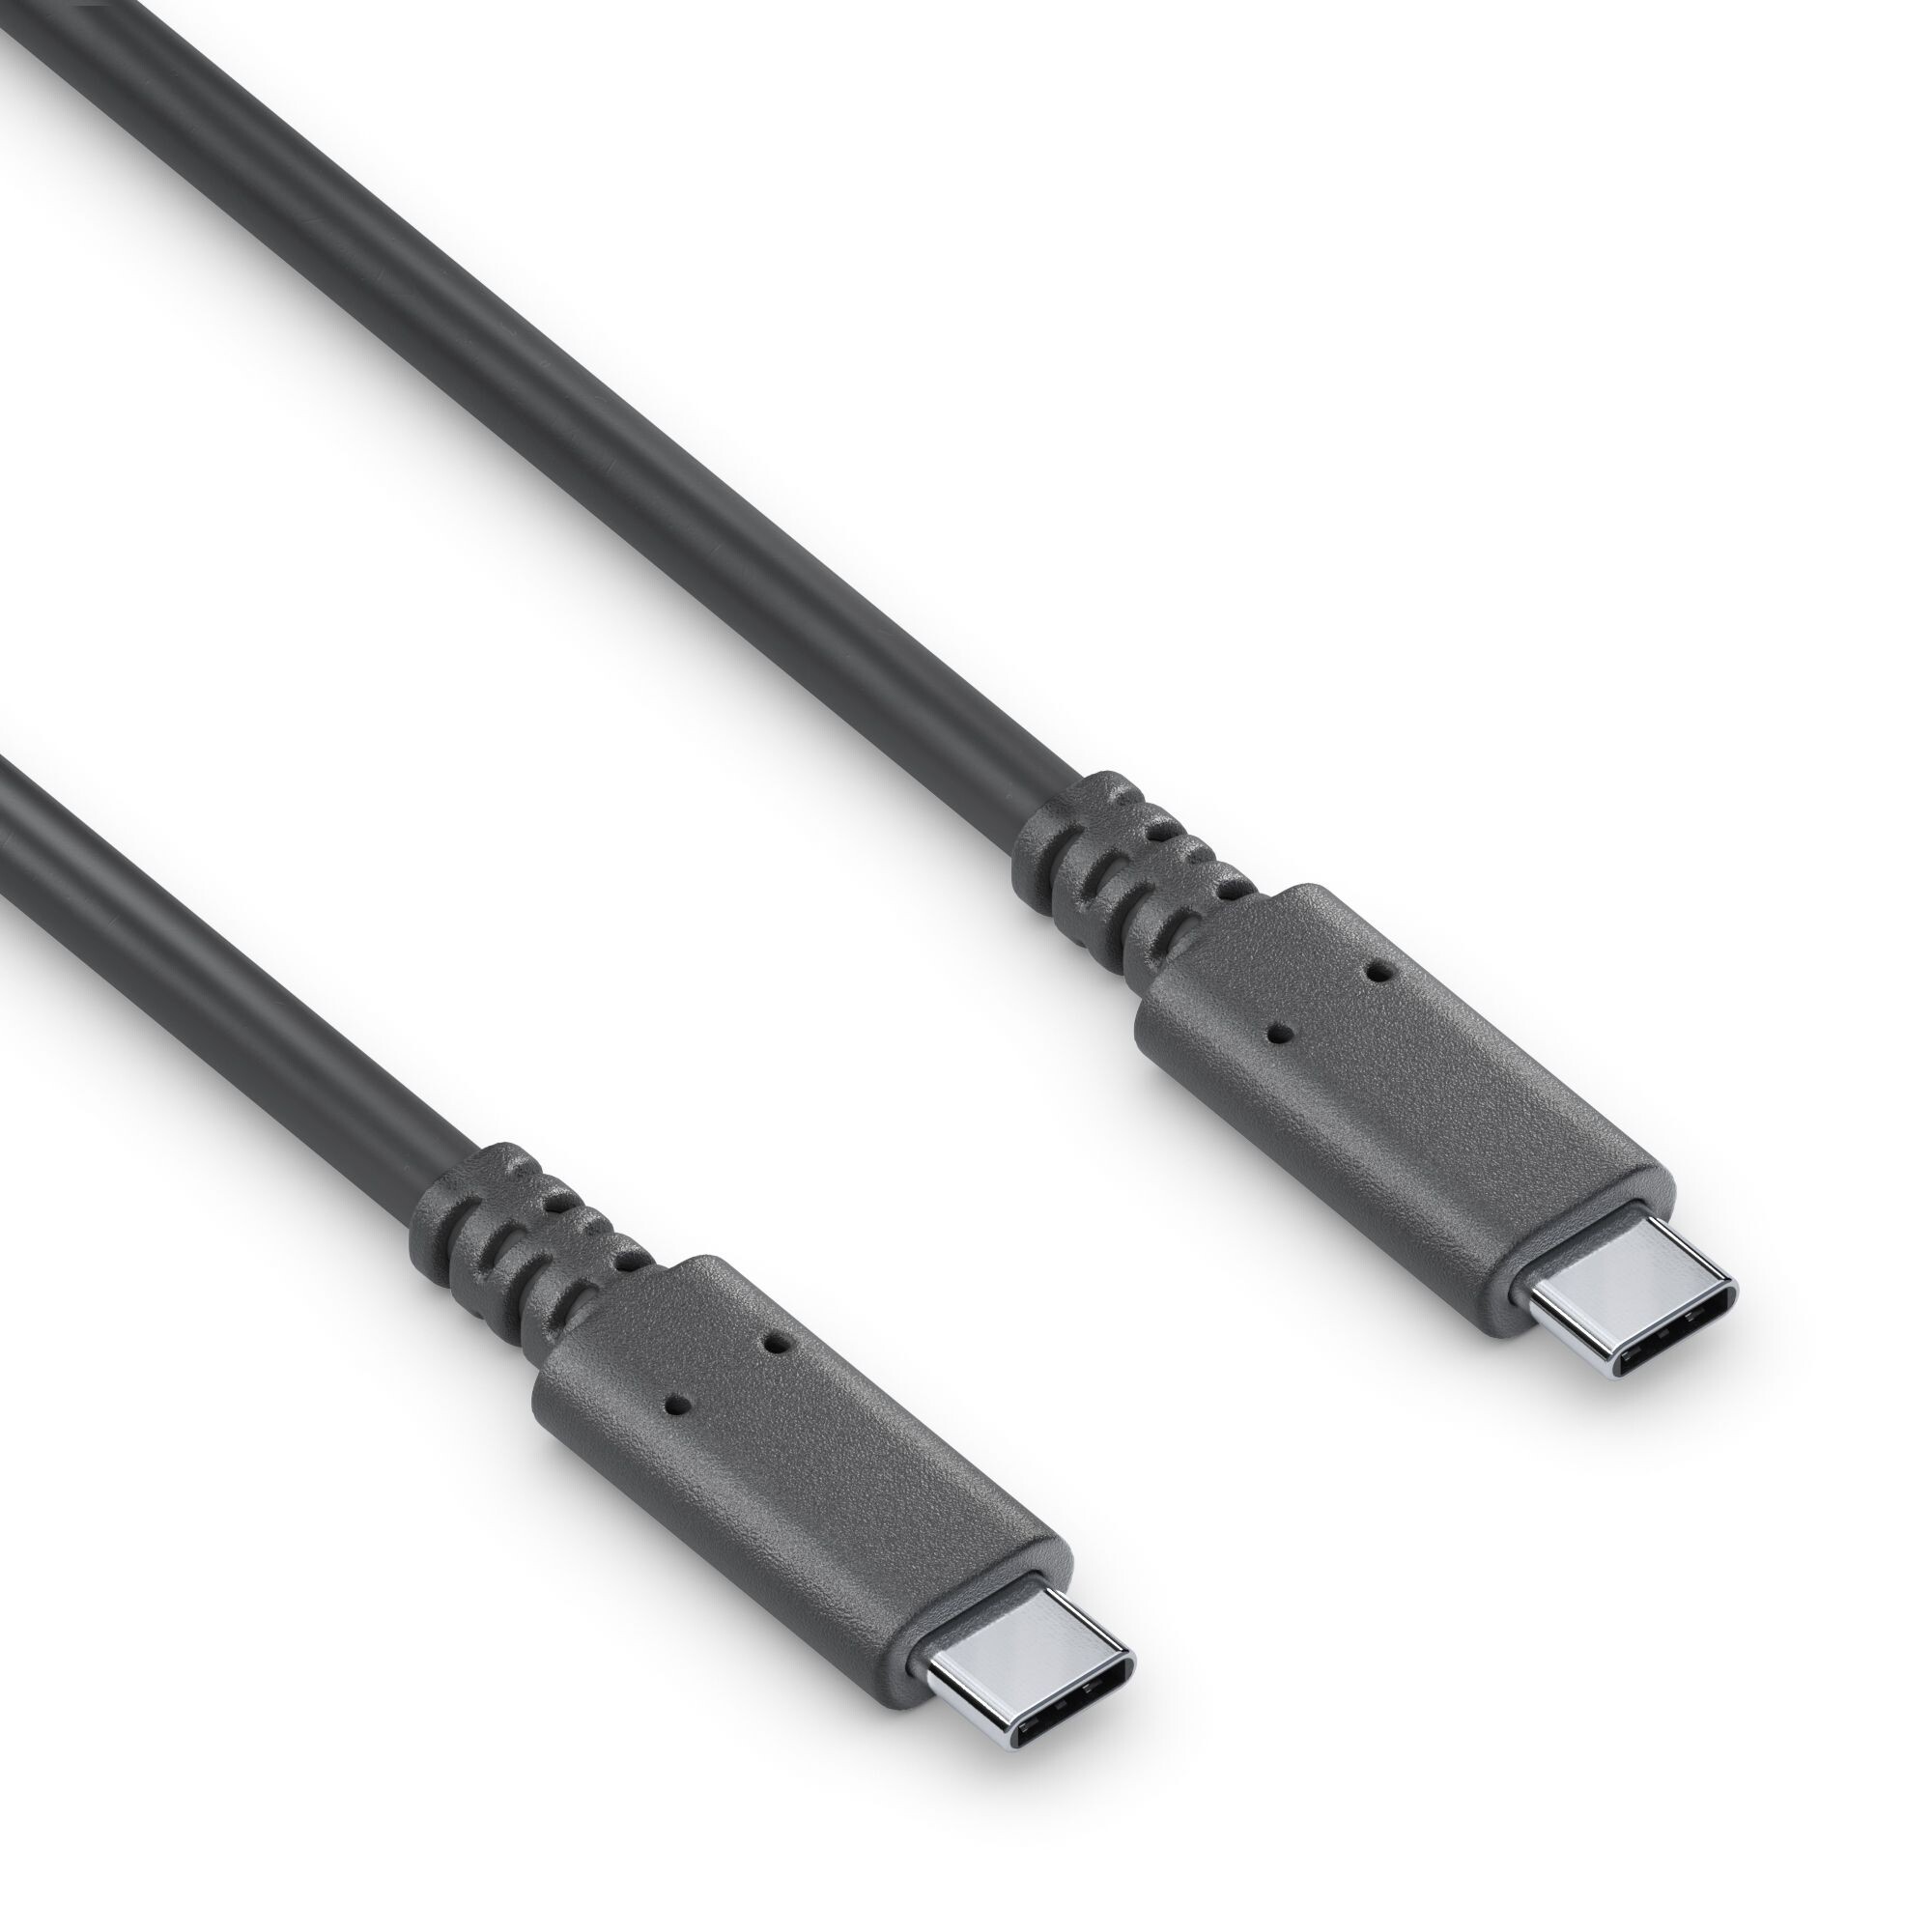 Purelink-USB-C-Kabel-3-2-mit-E-Marker-0-5m-schwarz